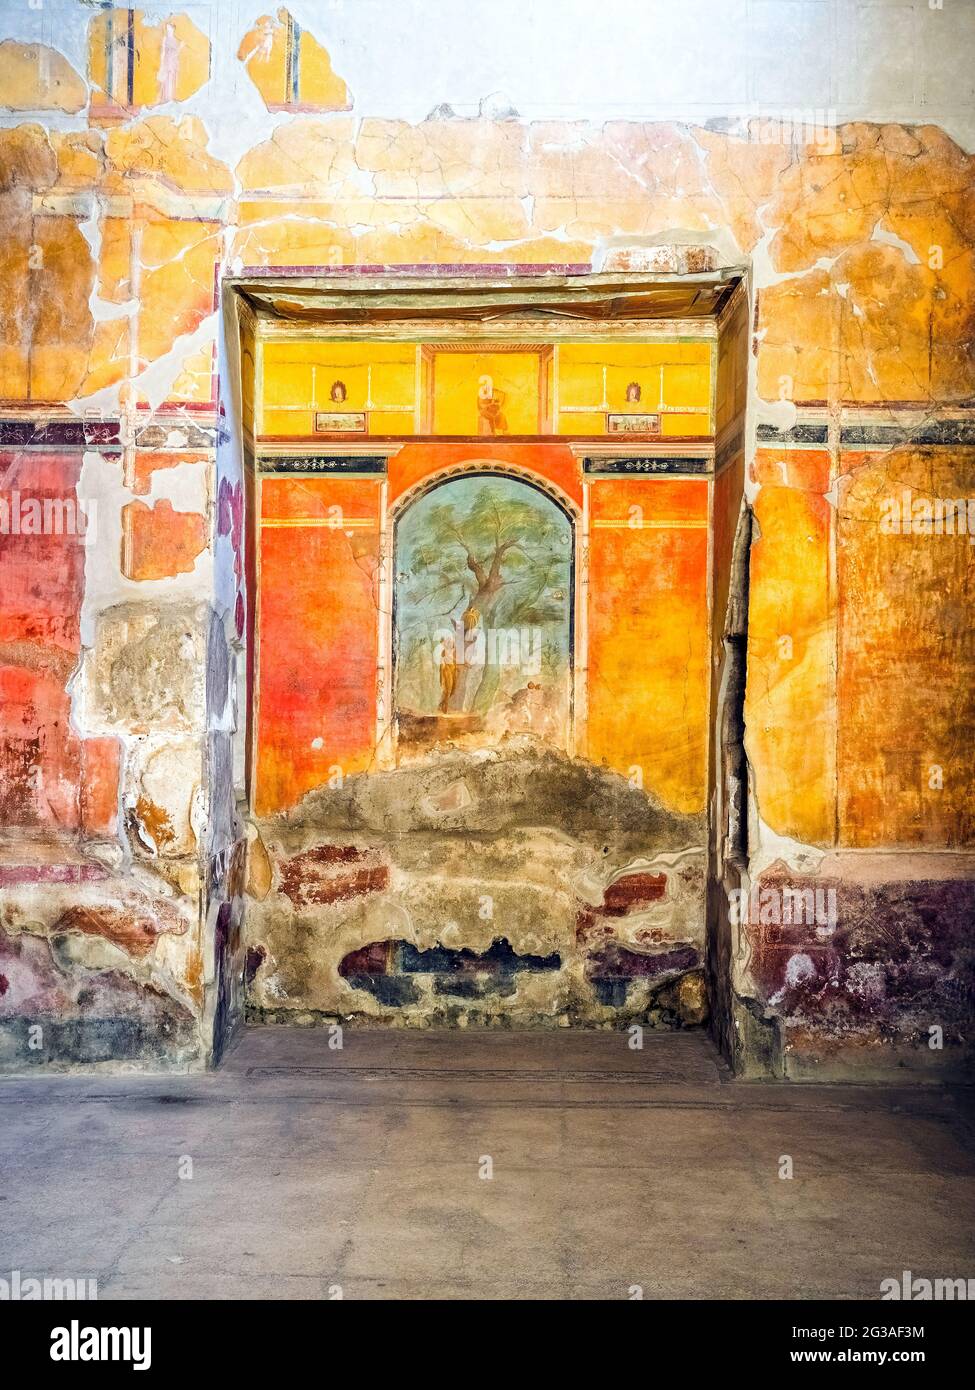 Calidarium (la salle chaude d'un bain romain) avec une grande fresque de la scène mythologique d'Hercules dans le jardin des Hesperides - Oplontis connu sous le nom de Villa Poppea à Torre Annunziata - Naples, Italie Banque D'Images